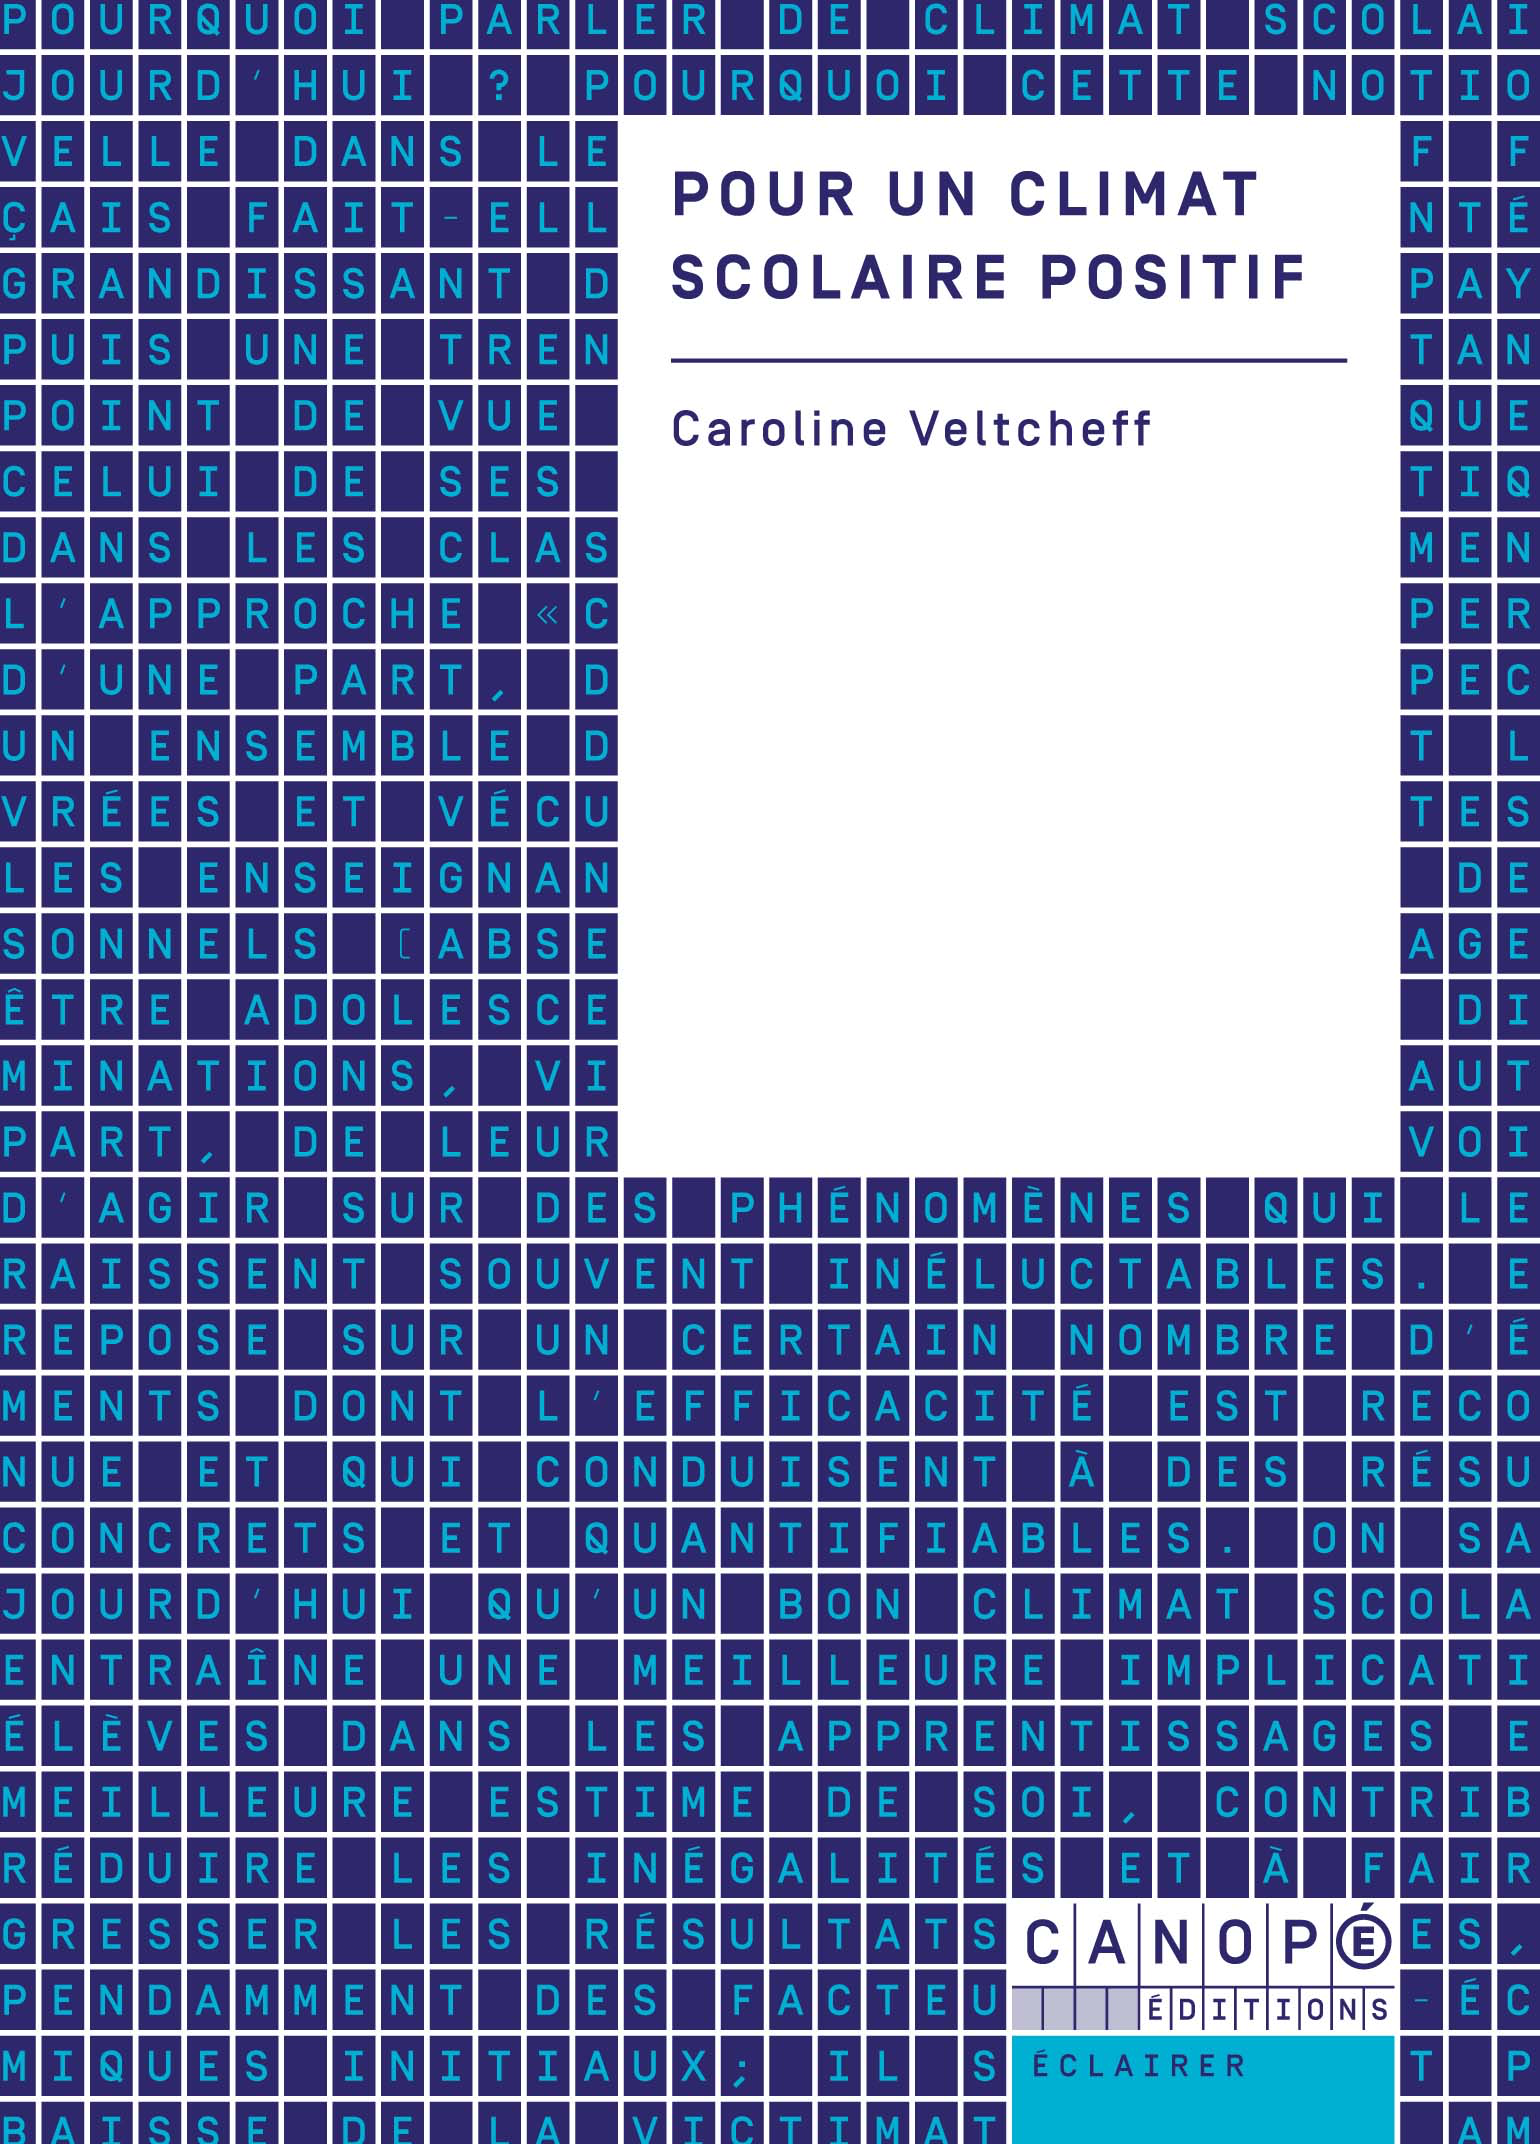 Pour un climat scolaire positif – Caroline Veltcheff